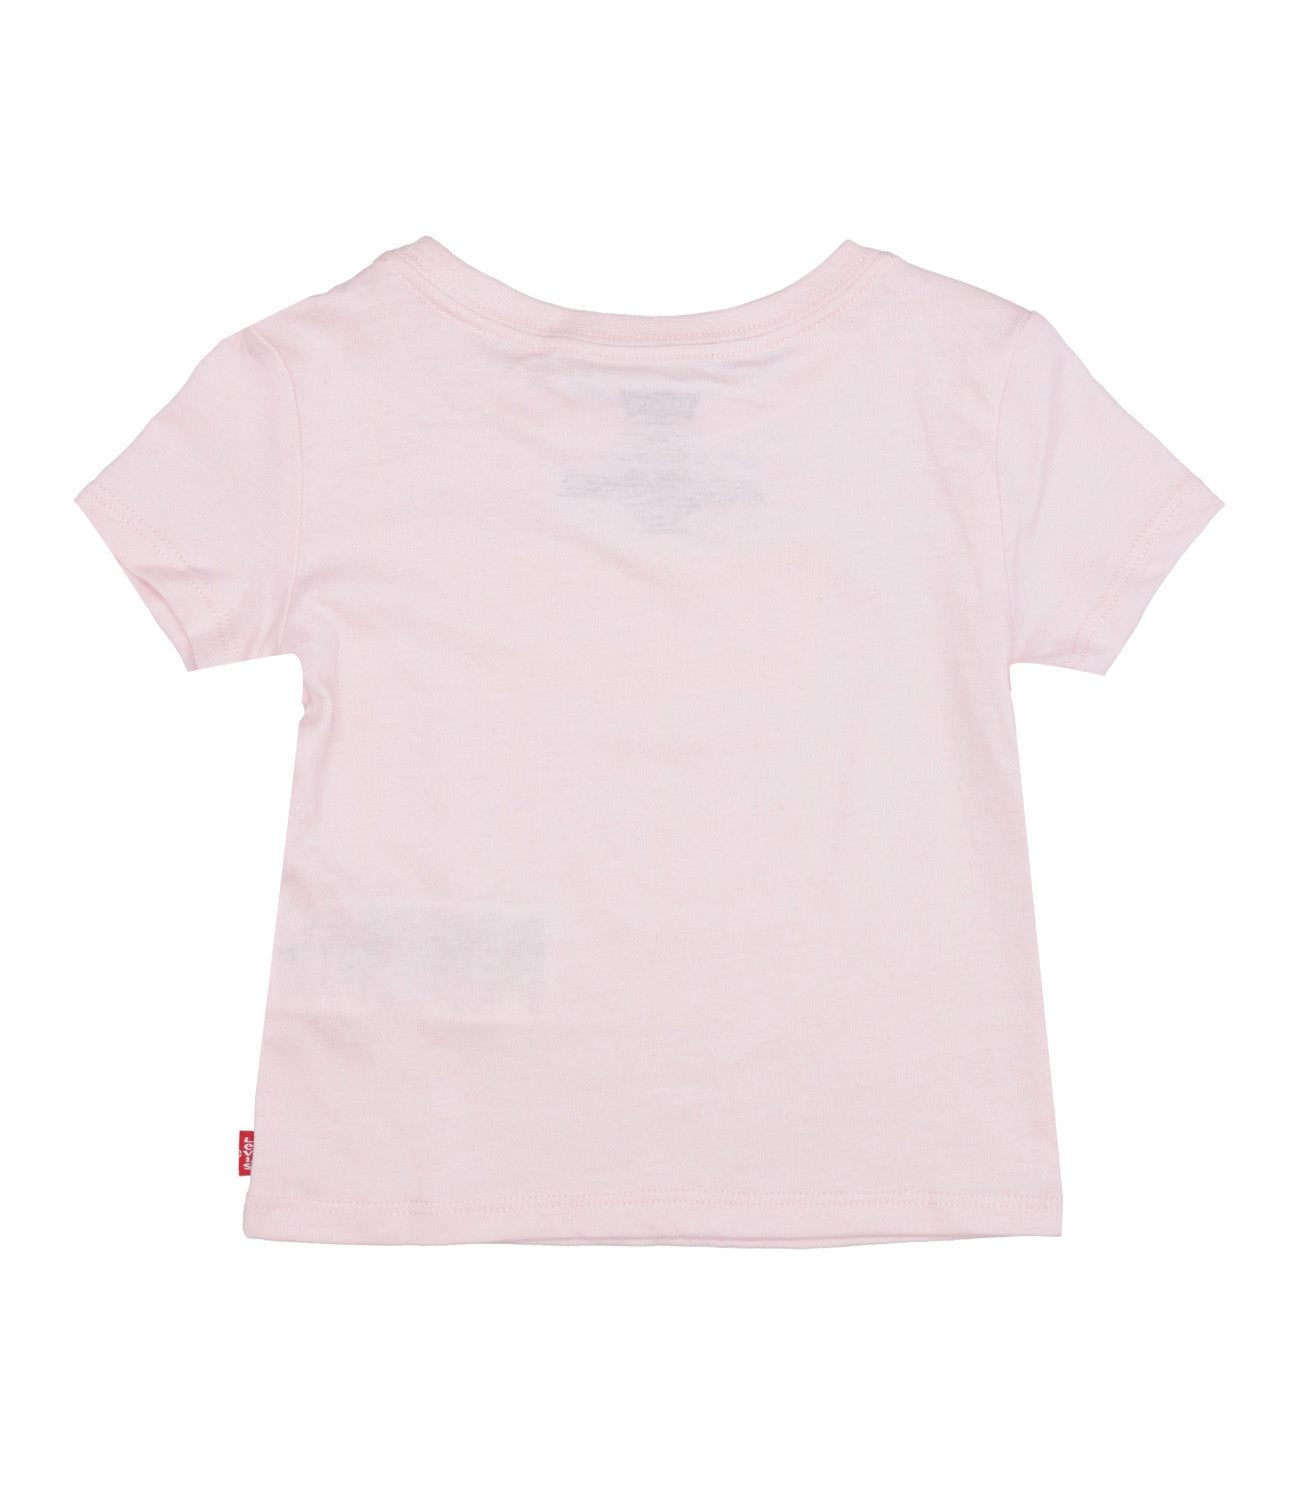 Levis Kids | T-Shirt Pink